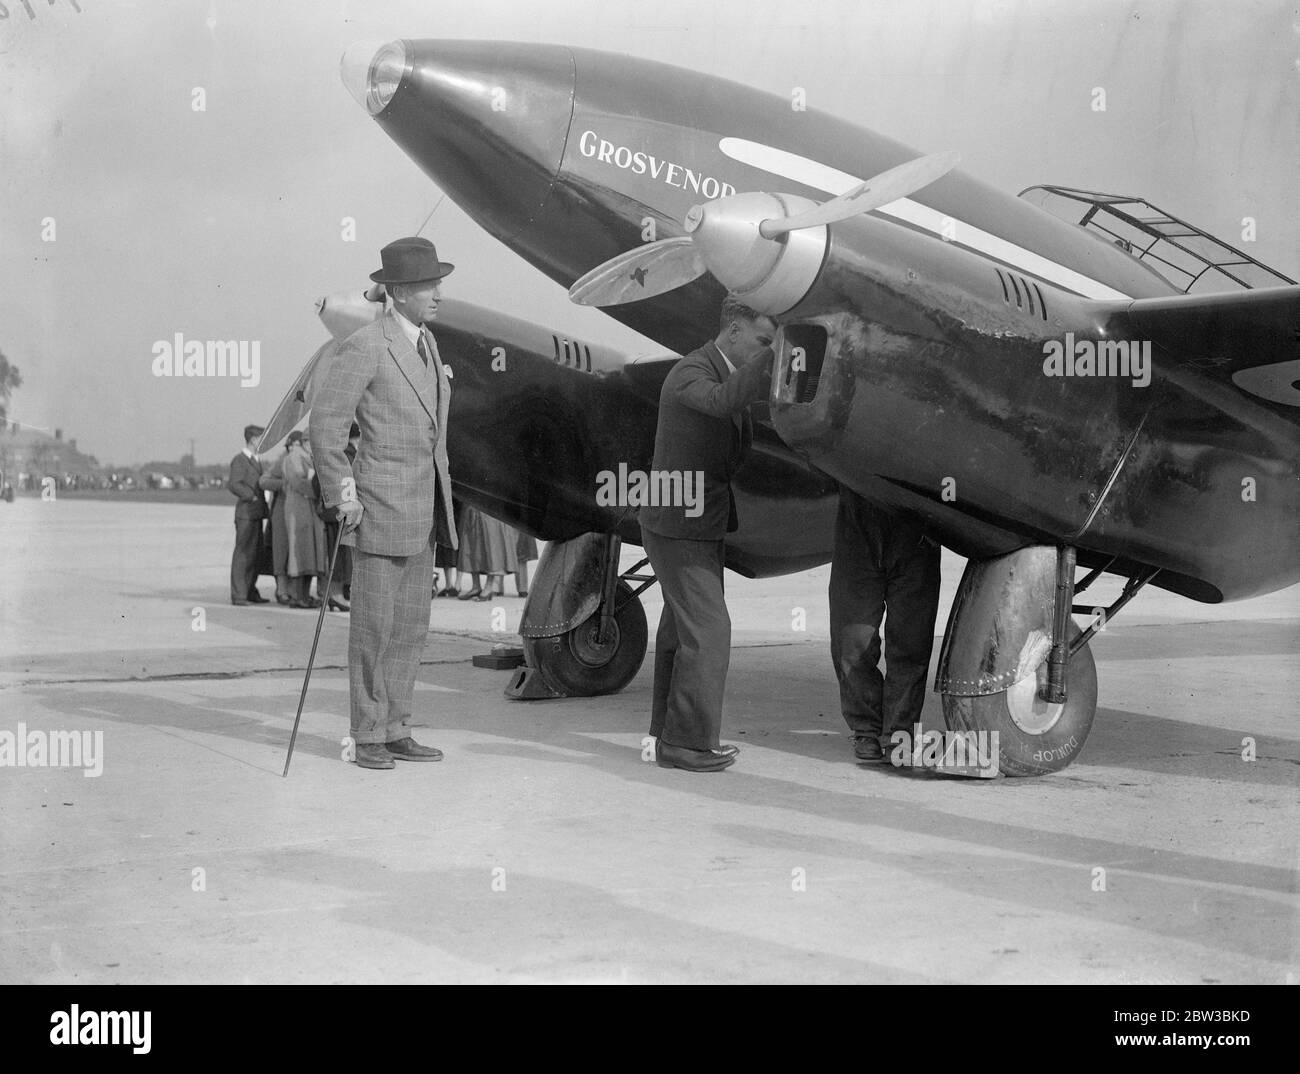 Lord Londonderry ispeziona la macchina per la London to Melbourne Air Race . La De Havilland DH.88 Comet' Grosvenor House', un aereo britannico a due motori dipinto a scarlatto. G-ACSS era di proprietà del signor A o Edwards e doveva essere utilizzato in gara. 19 ottobre 1934 Foto Stock